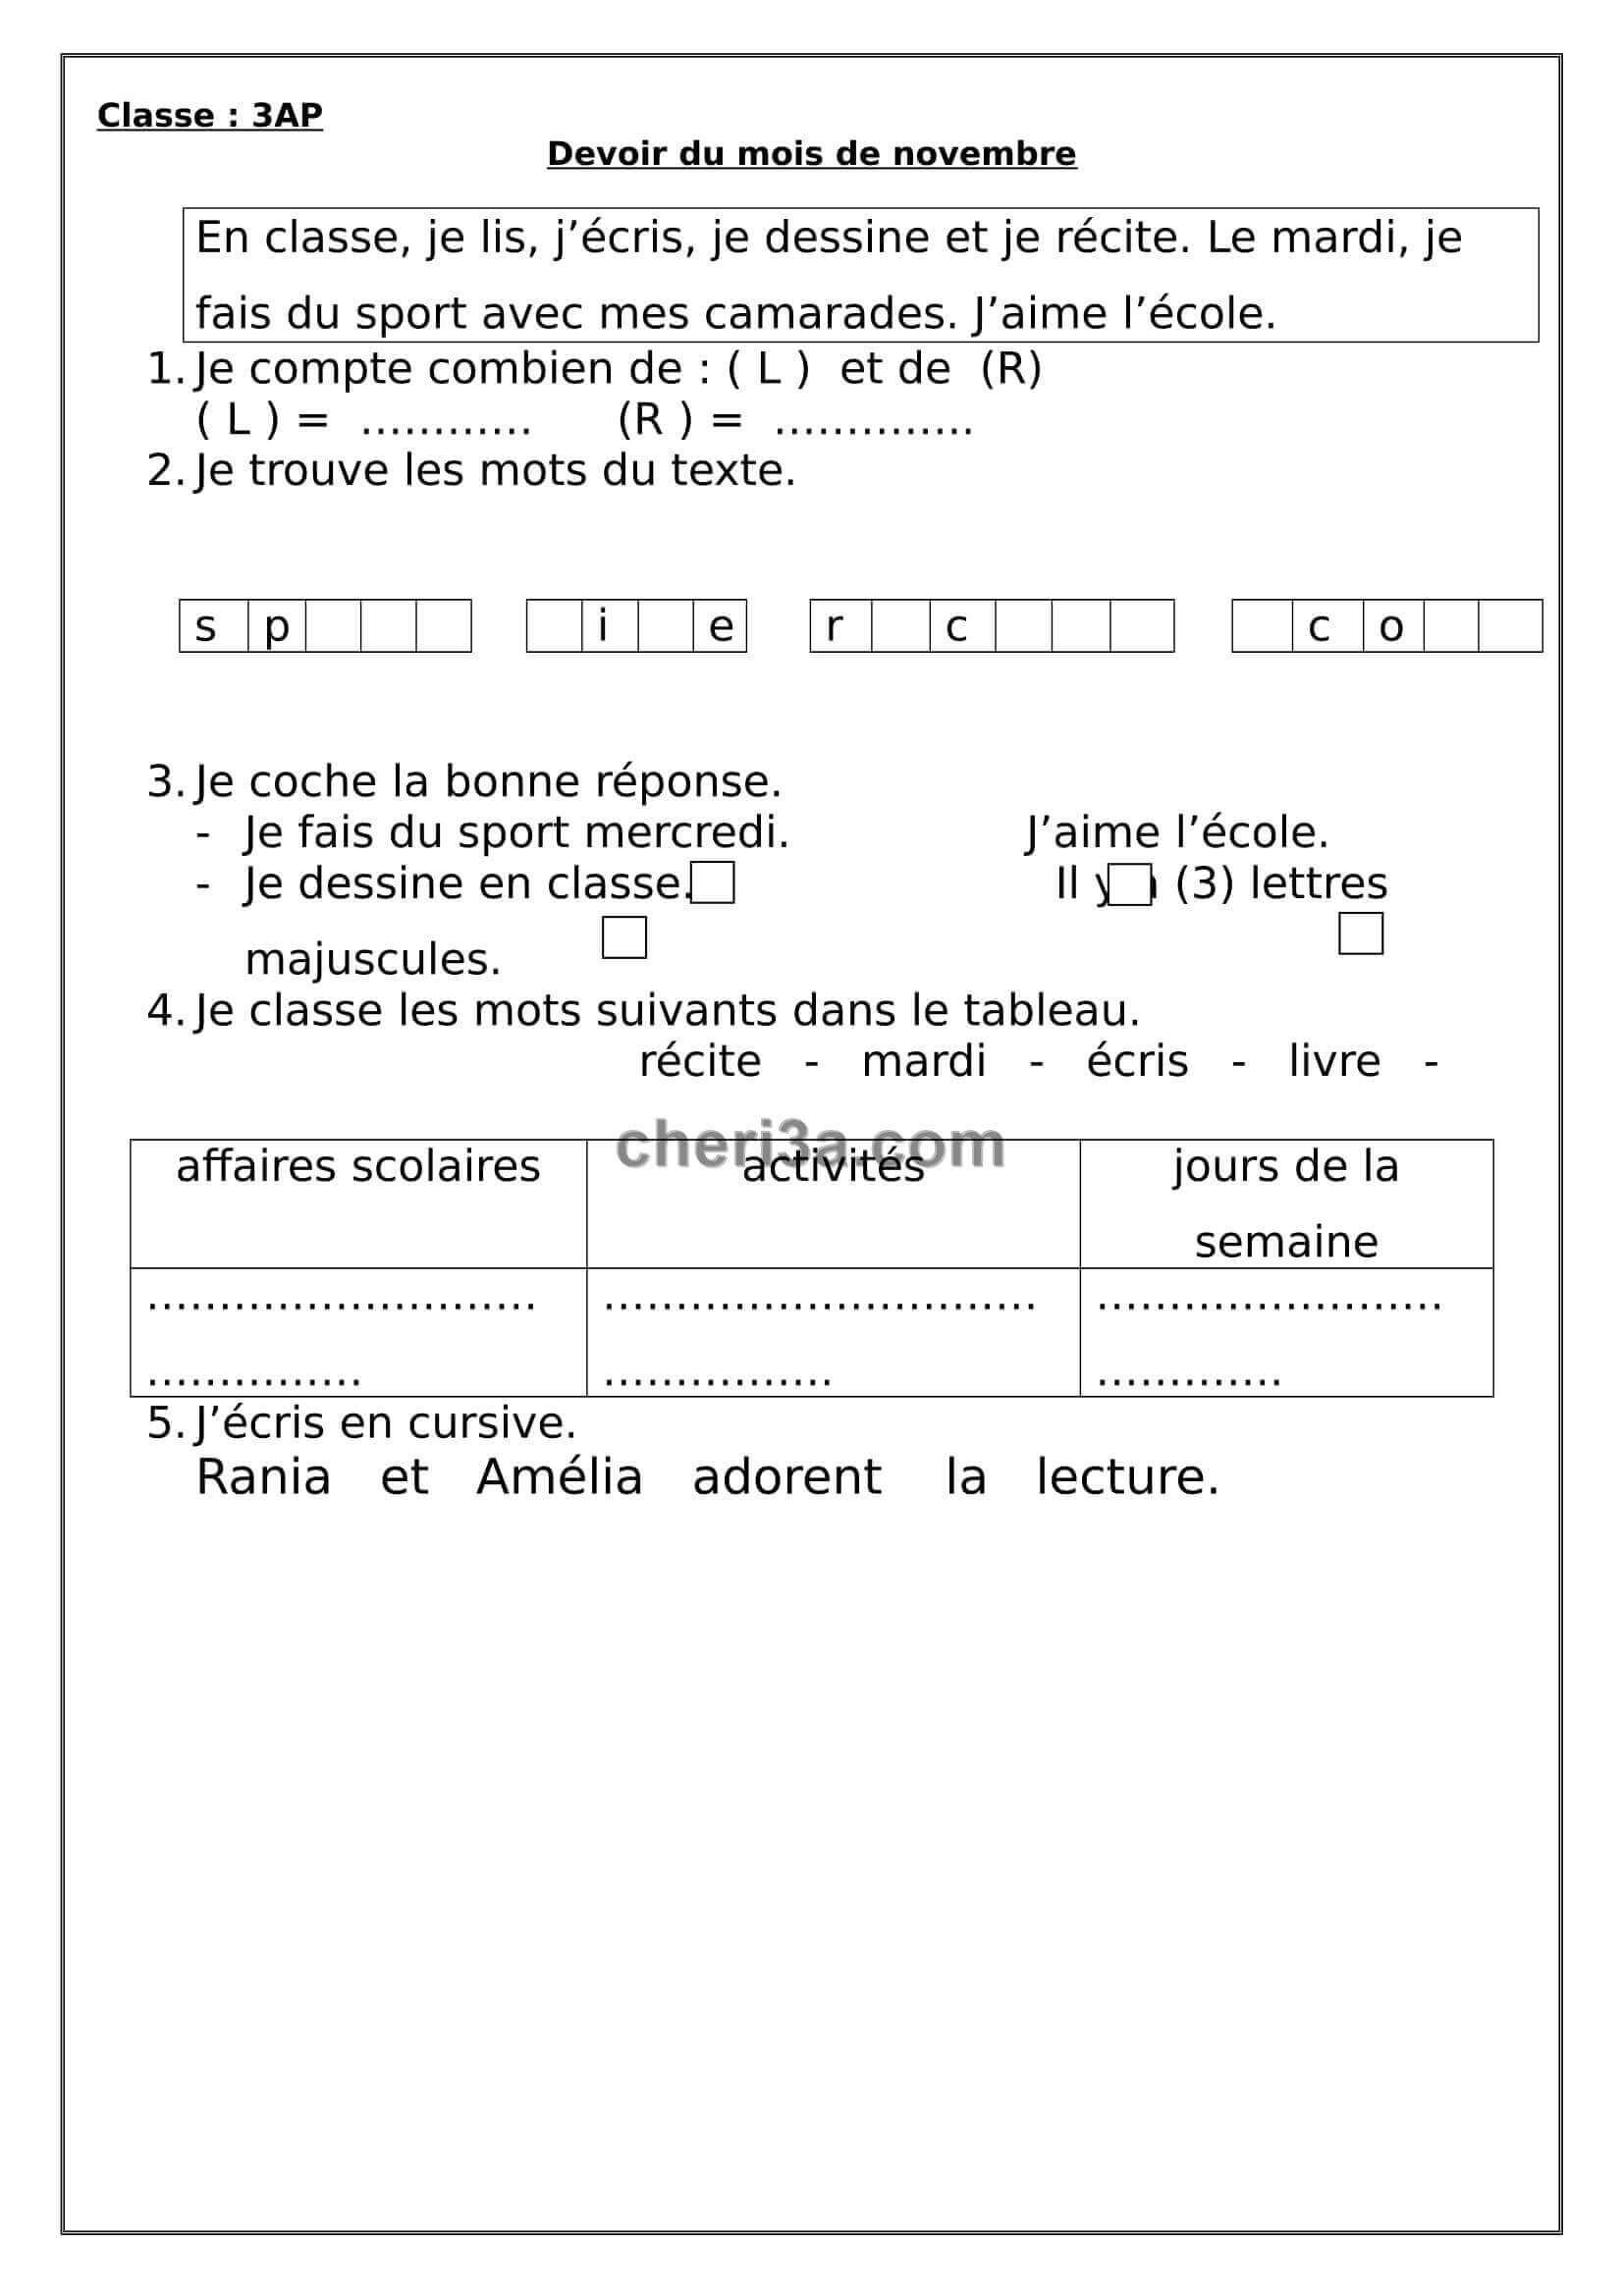 اختبار الفصل الاول للسنة الثالثة ابتدائي في الفرنسية النموذج 2